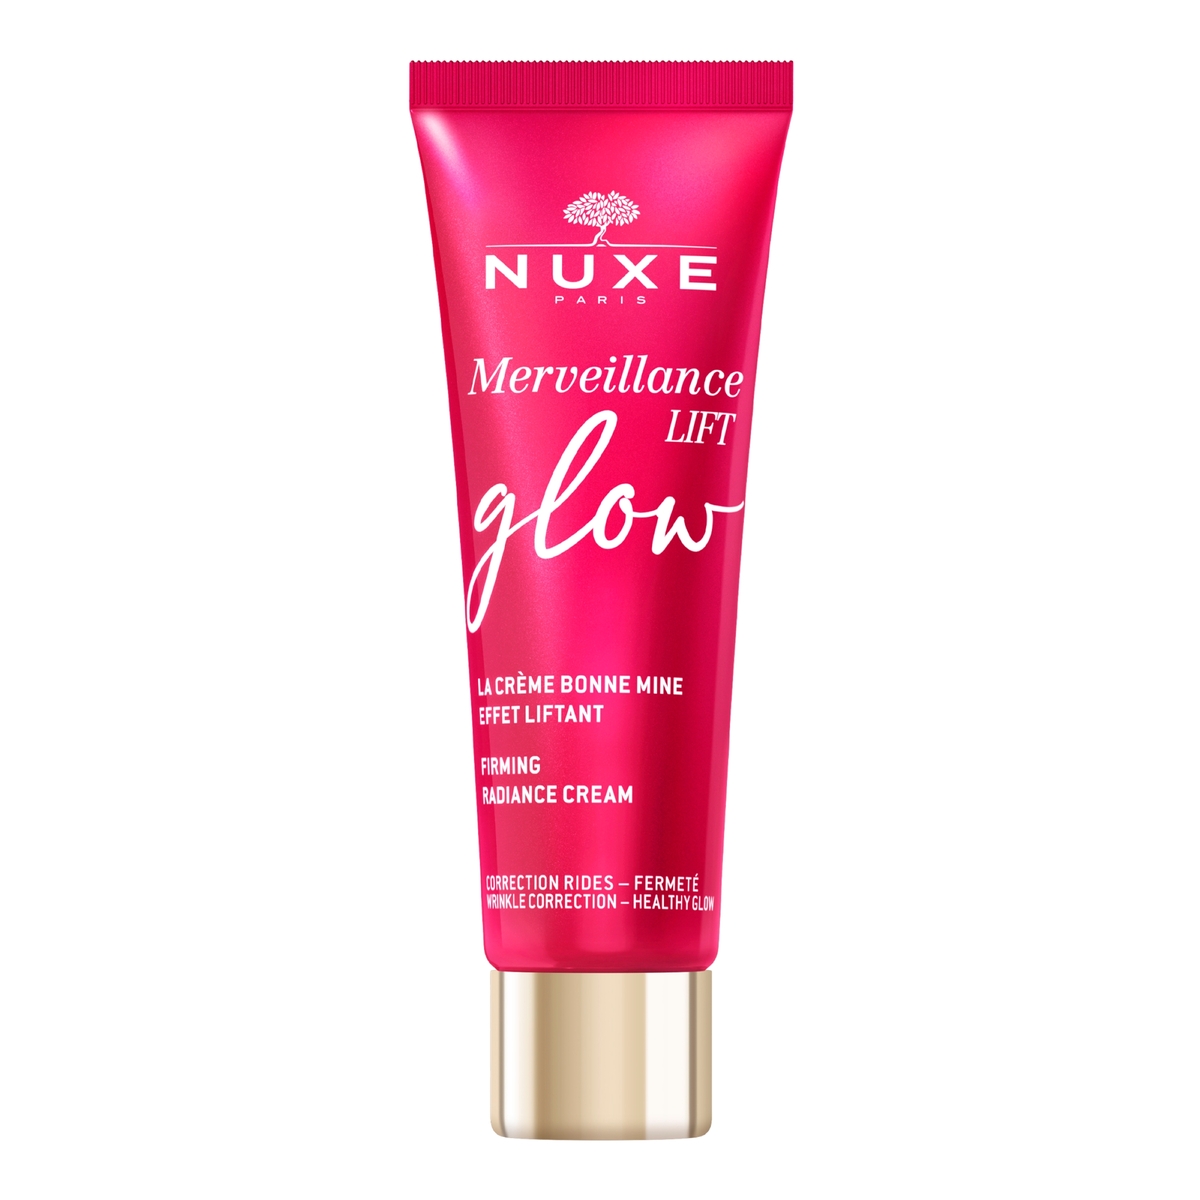 NUXE - Merveillance Lift Glow Cream